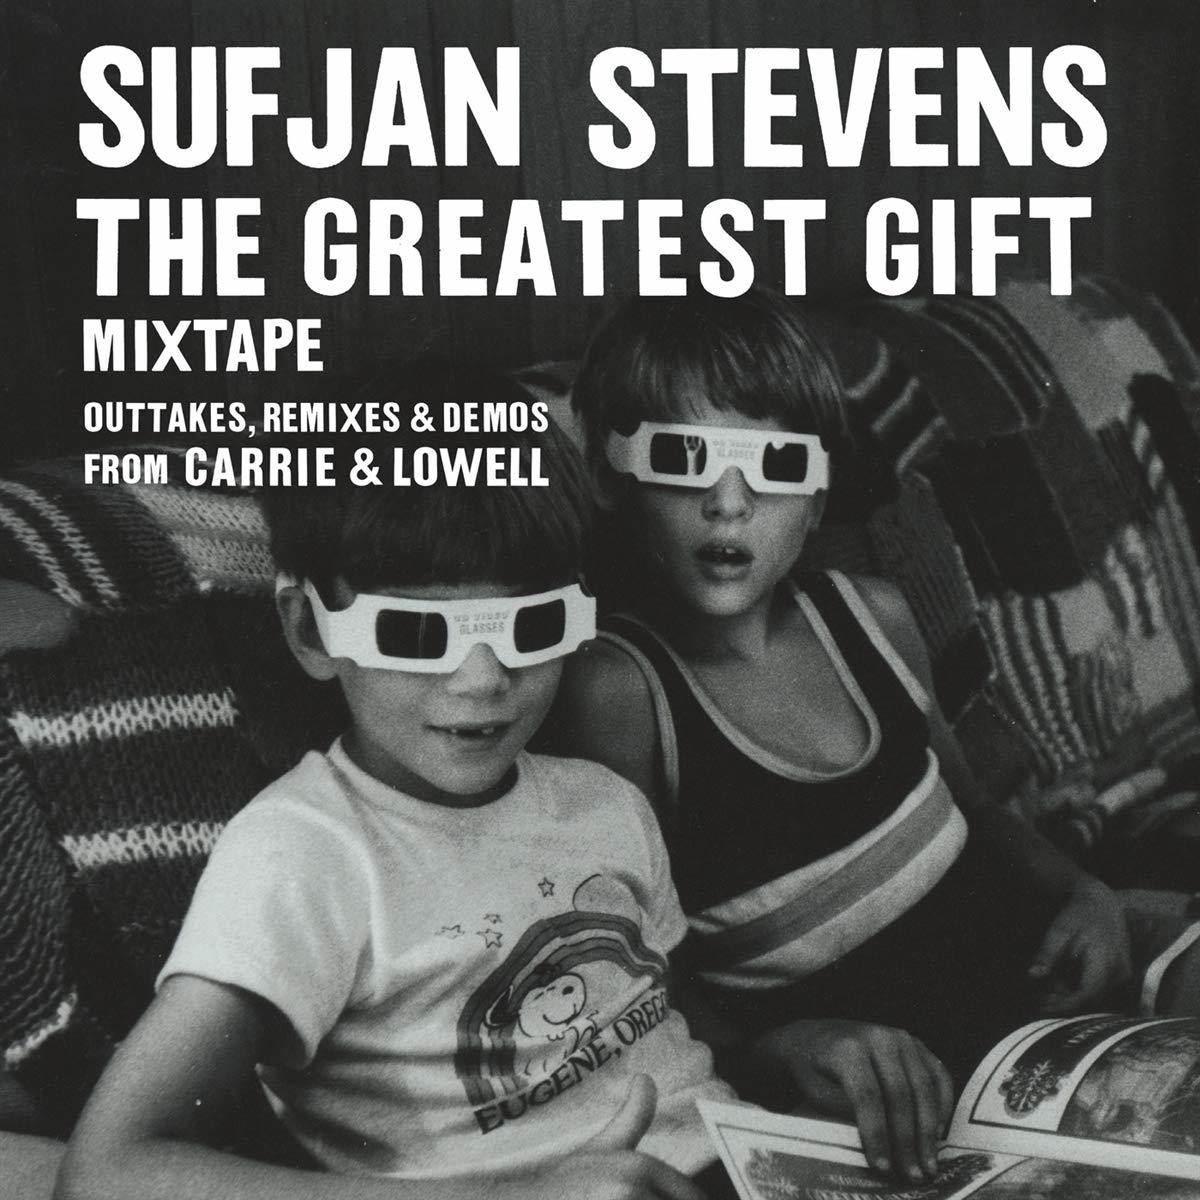 Sufjan Stevens - - The Gift (CD) Greatest